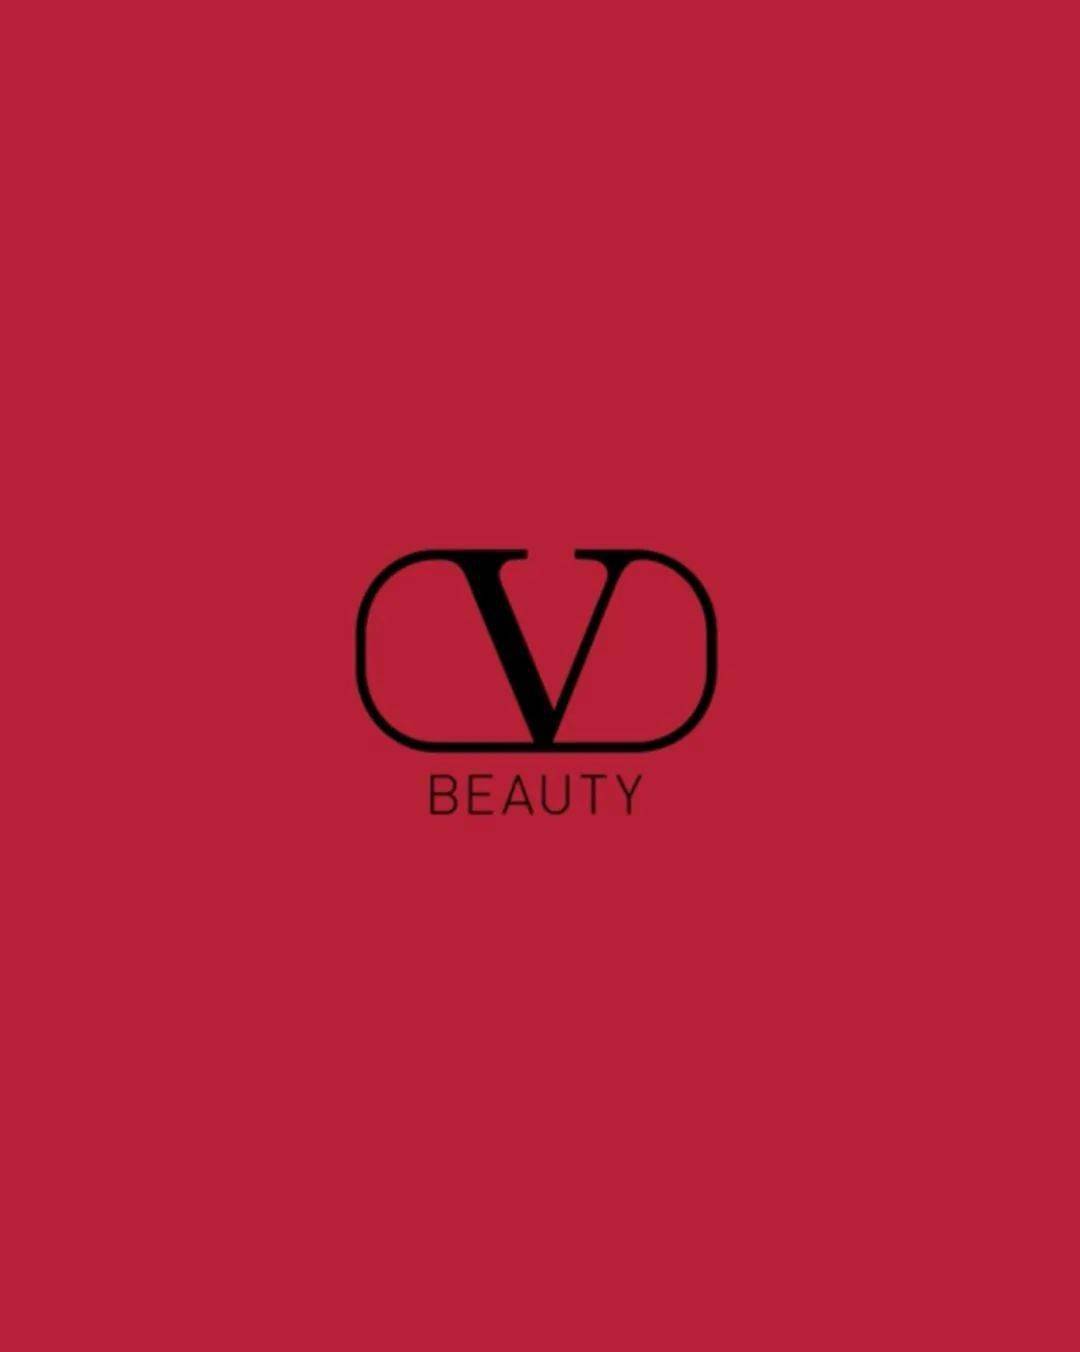 以经典valentino红搭配金色logo valentino beauty即将重磅登场!